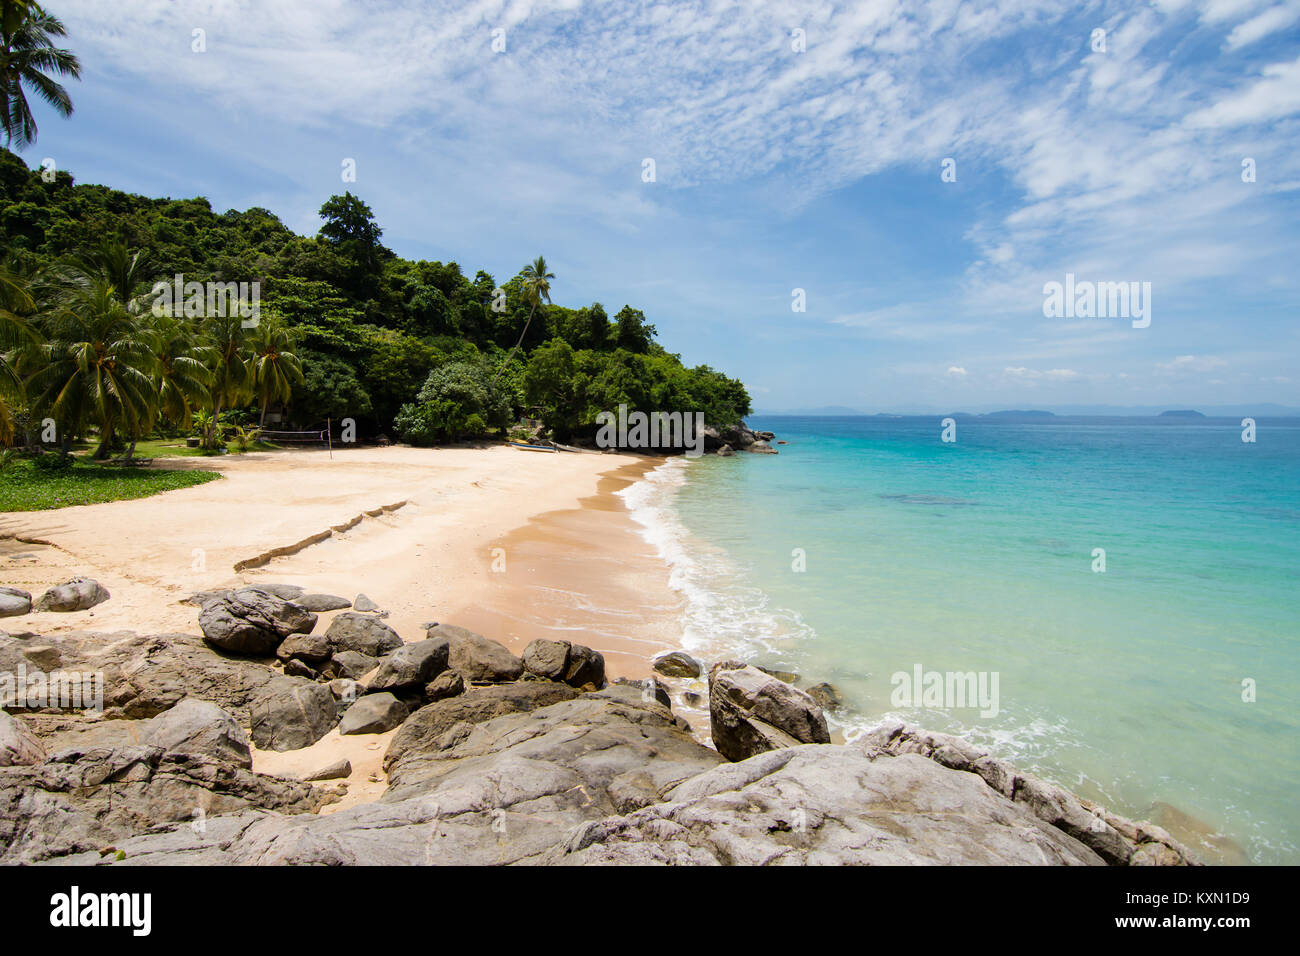 Le onde luminose di idilic turchese del mare incontra riparata piccola spiaggia di sabbia dorata su un Paradise Island. perhentian islands, Malaysia. Foto Stock